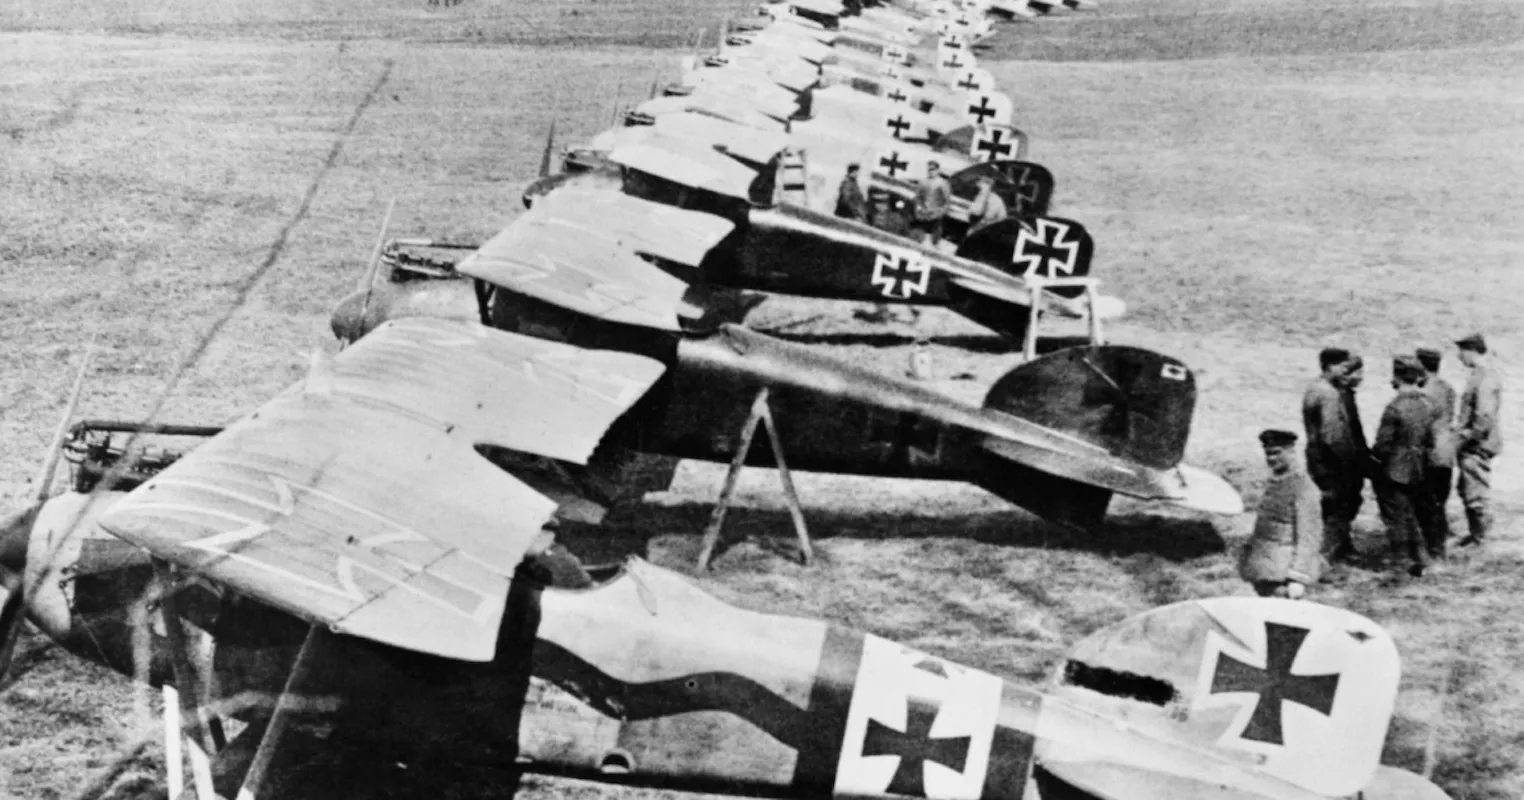 La guerra va accelerar el desenvolupament militar dels avions en un moment en què els aparells servien sobretot per fer exhibicions i primeres gestes. A la foto, la flota aèria alemanya